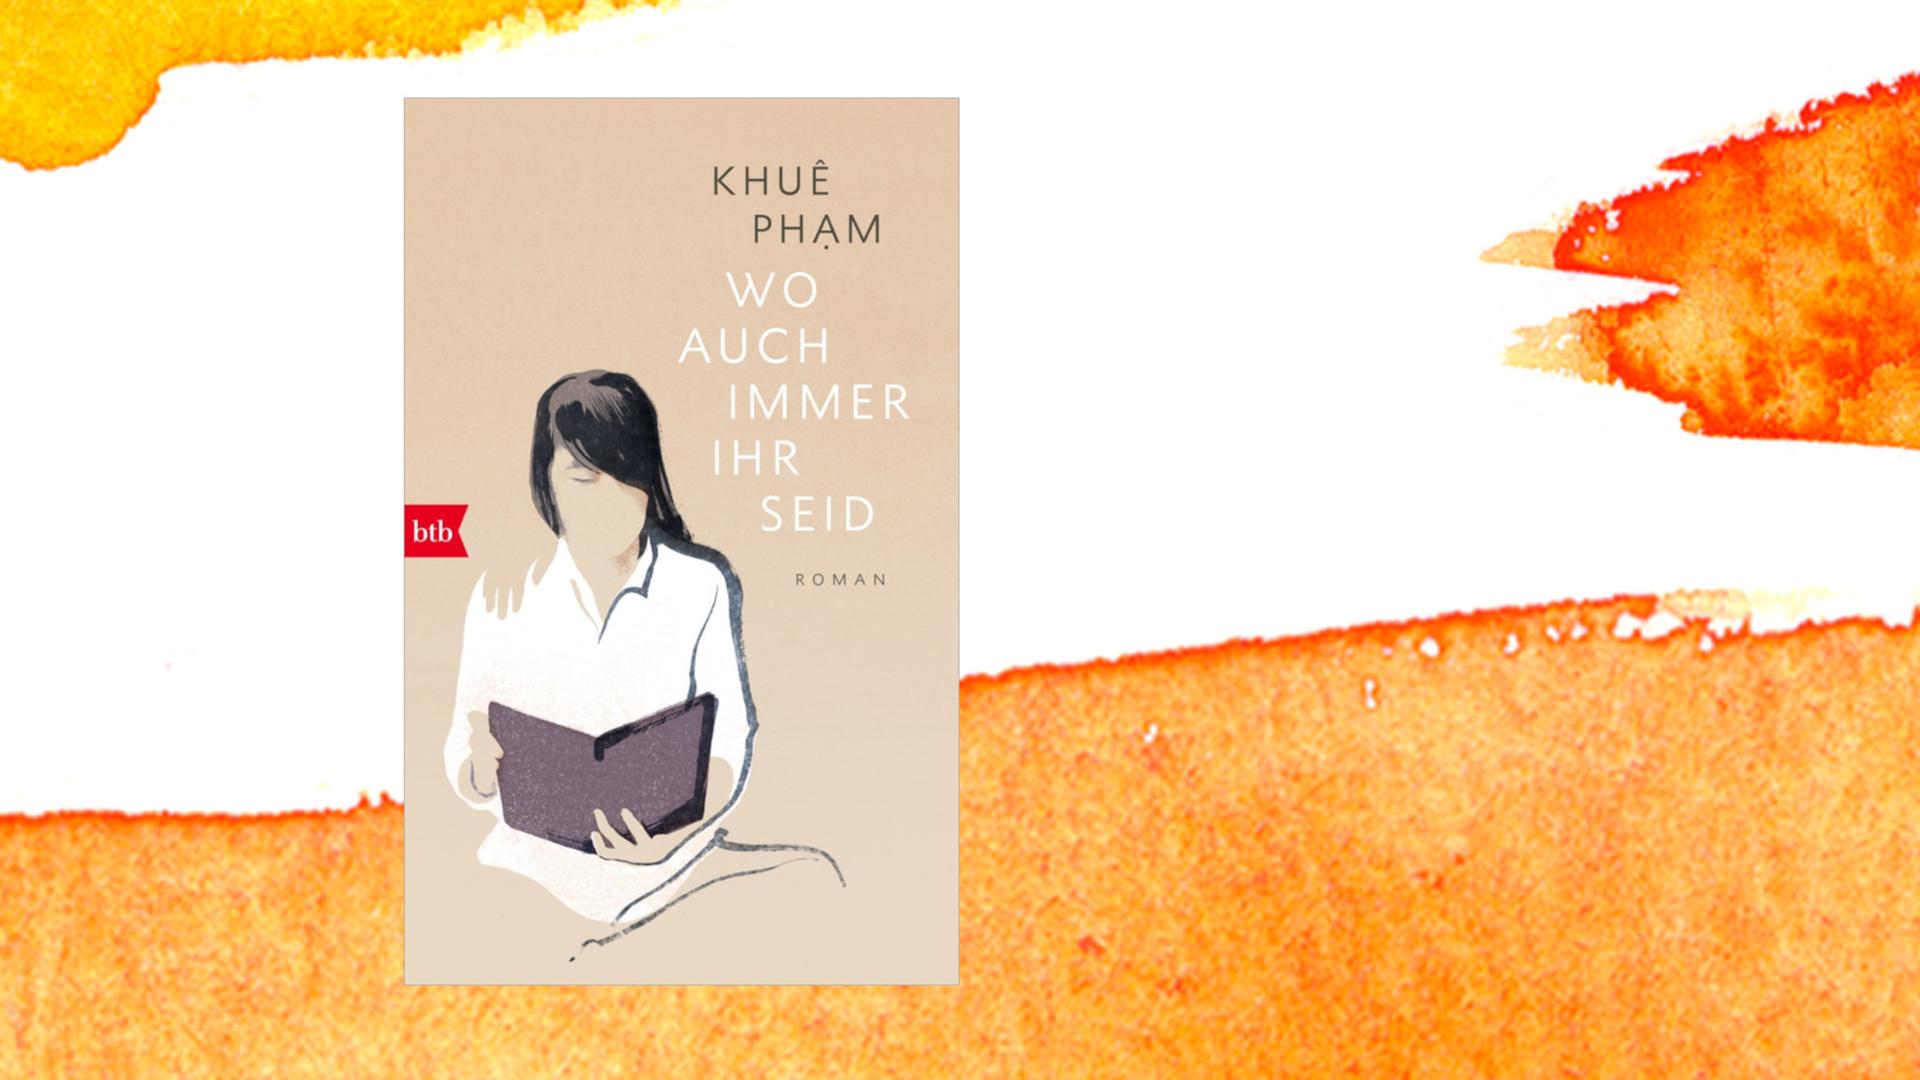 Das Buchcover von Khuê Phams Roman "Wo auch immer ihr seid" zeigt eine lesende Frau.